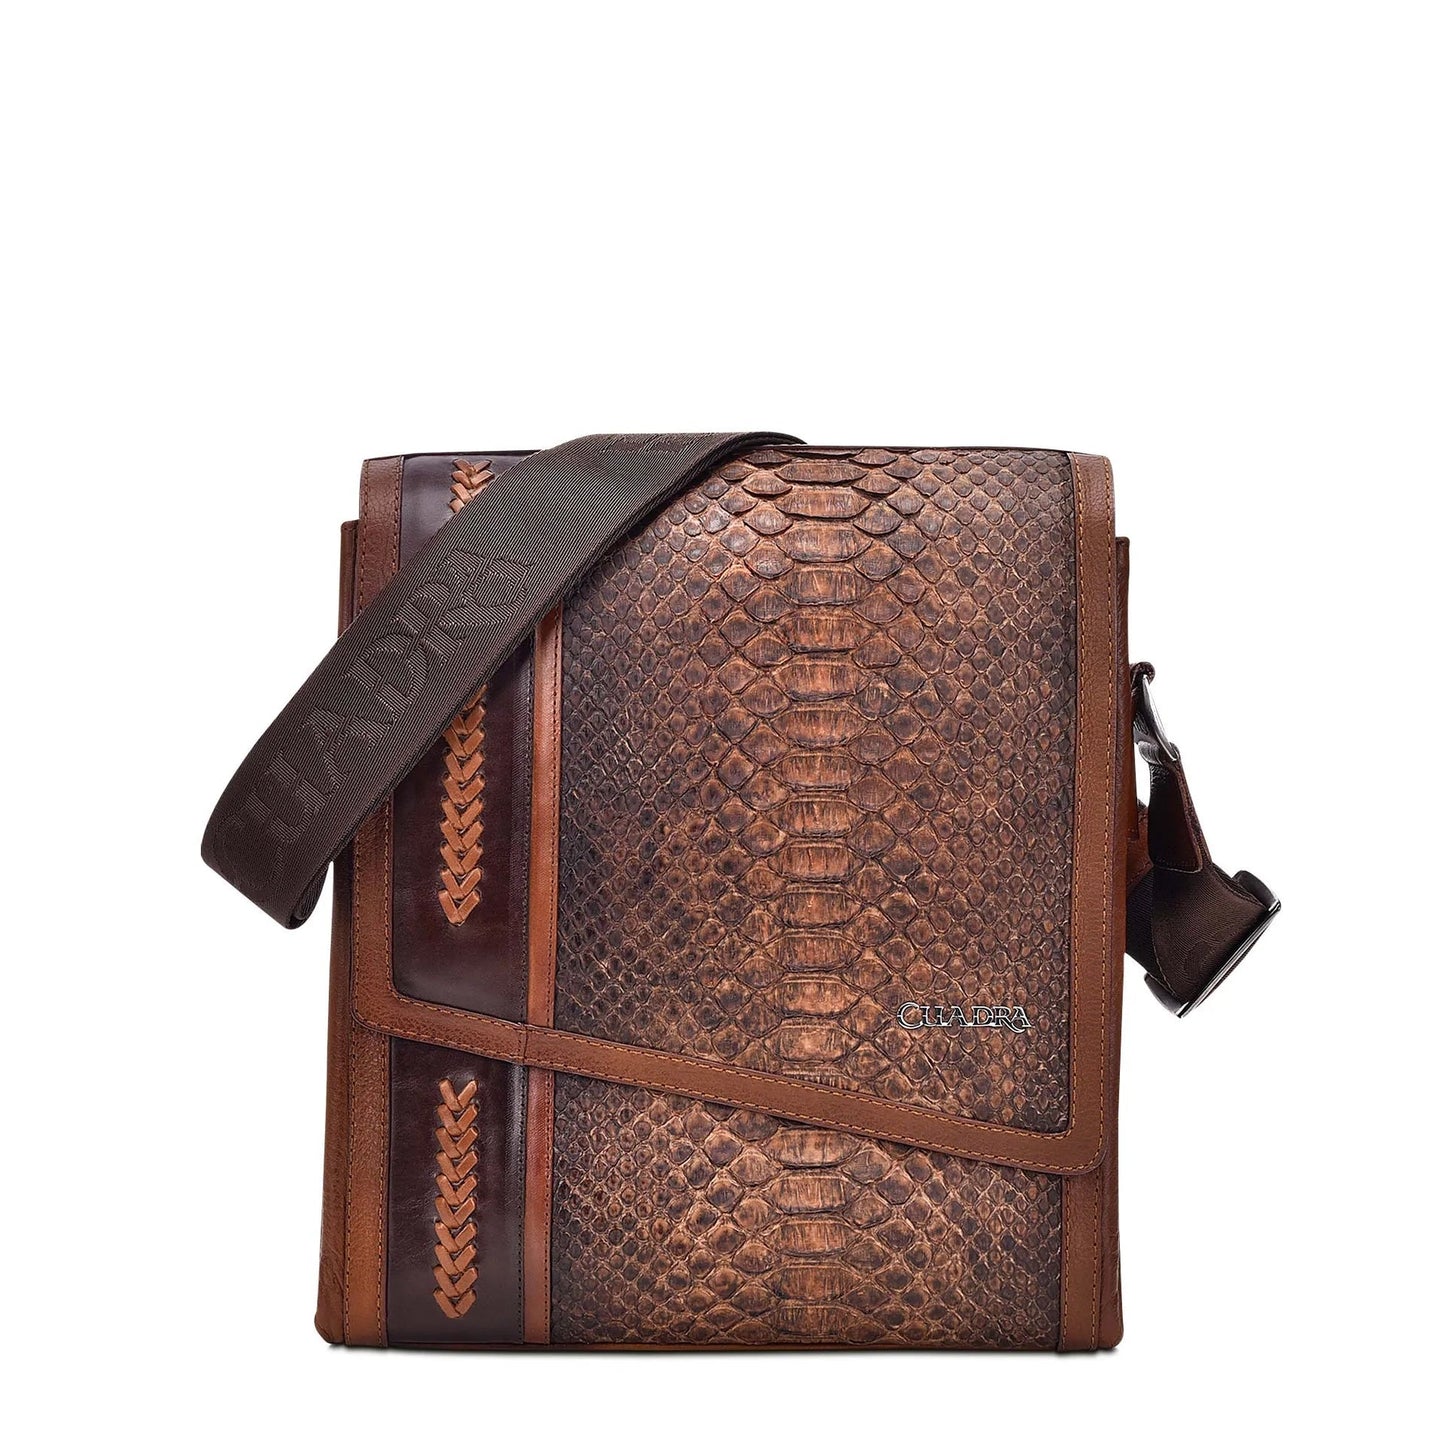 BO362PI - Cuadra cacao casual fashion python messenger bag for men / women-Kuet.us